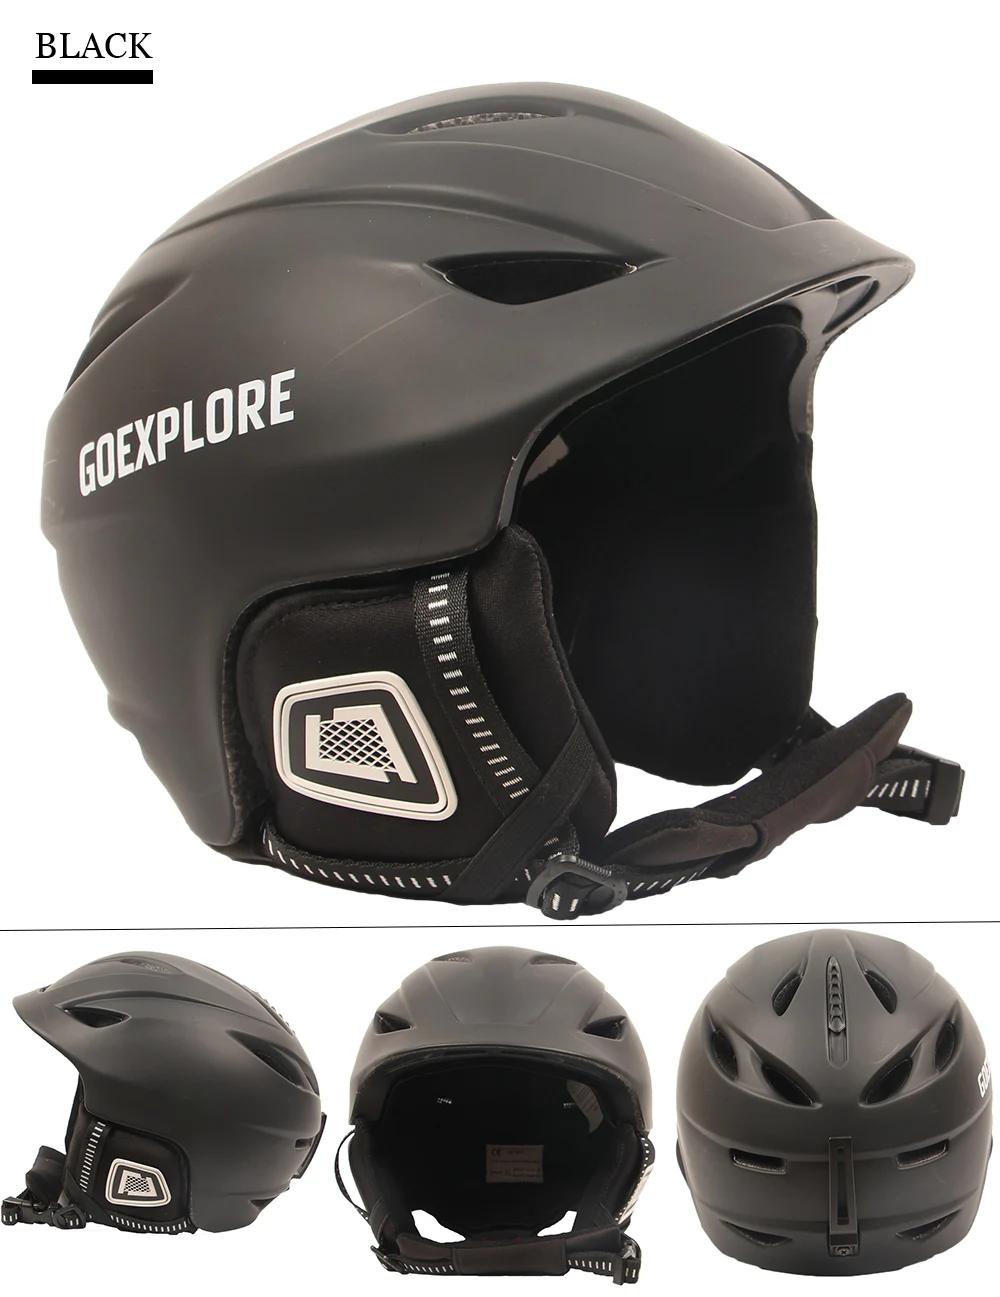 Goexplore ore лыжный шлем цельно-Формованный женский лыжный шлем Взрослый Снежный шлем Защитная Кепка скейтборд Снежный сноуборд шлем для мужчин